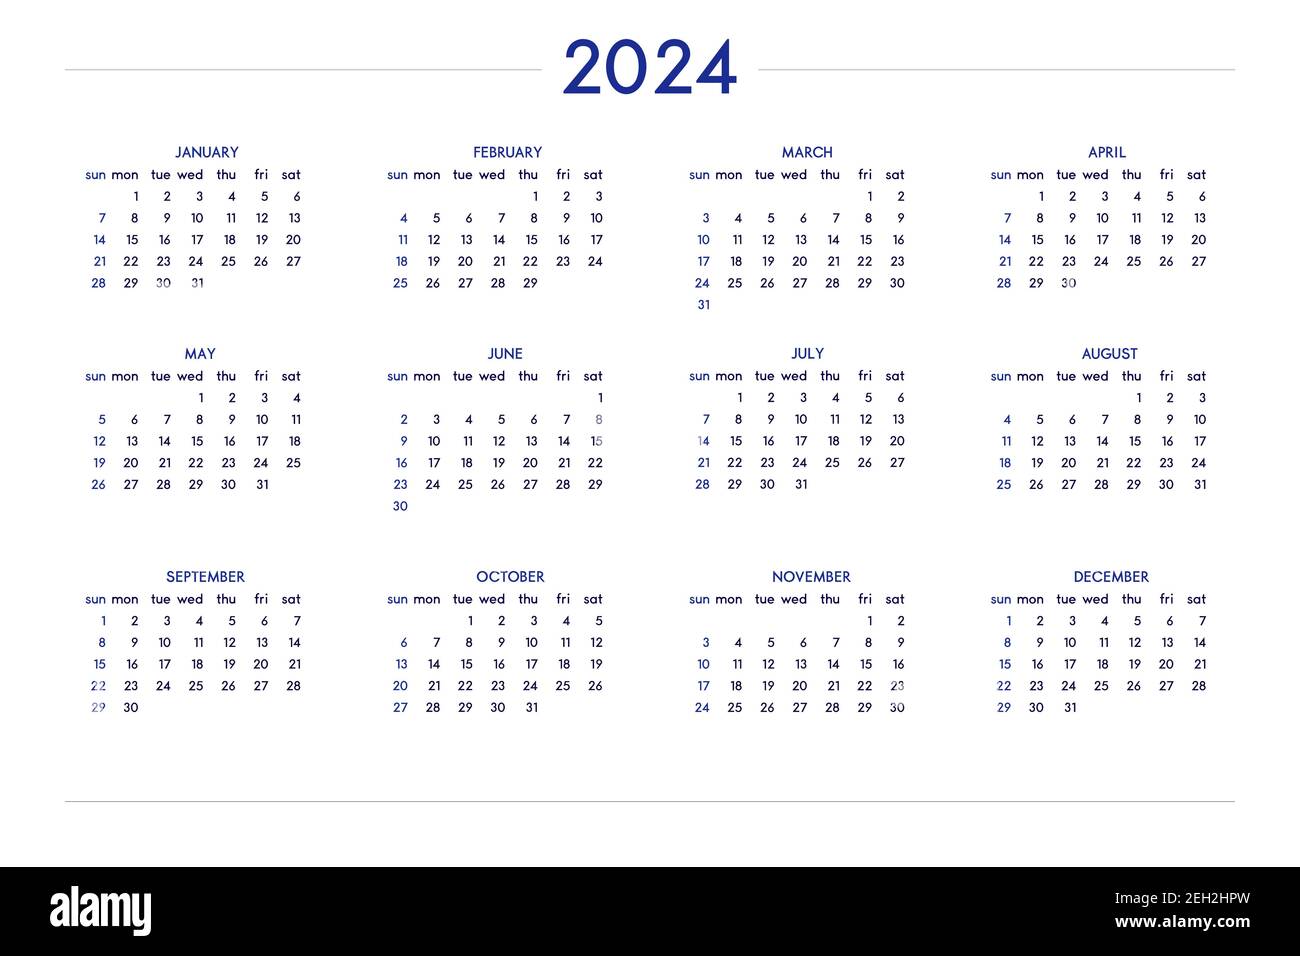 Calendar 2024 Banque de photographies et d’images à haute résolution